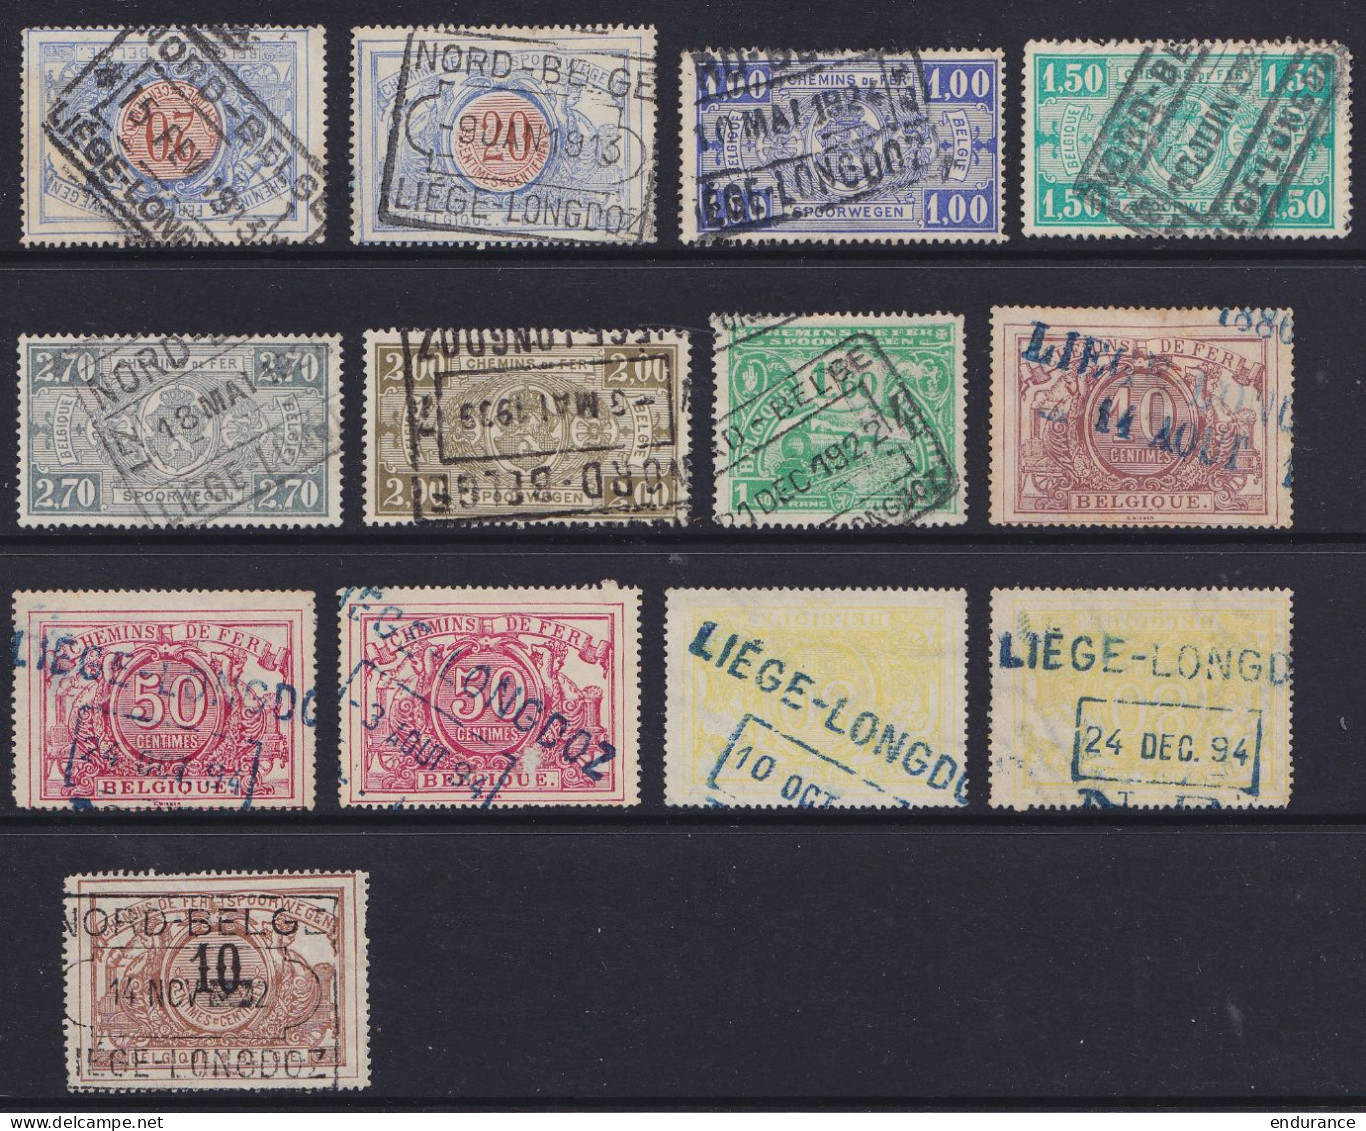 Lot +430 timbres Chemins de Fer oblitérations NORD-BELGE pour étude - voir scans